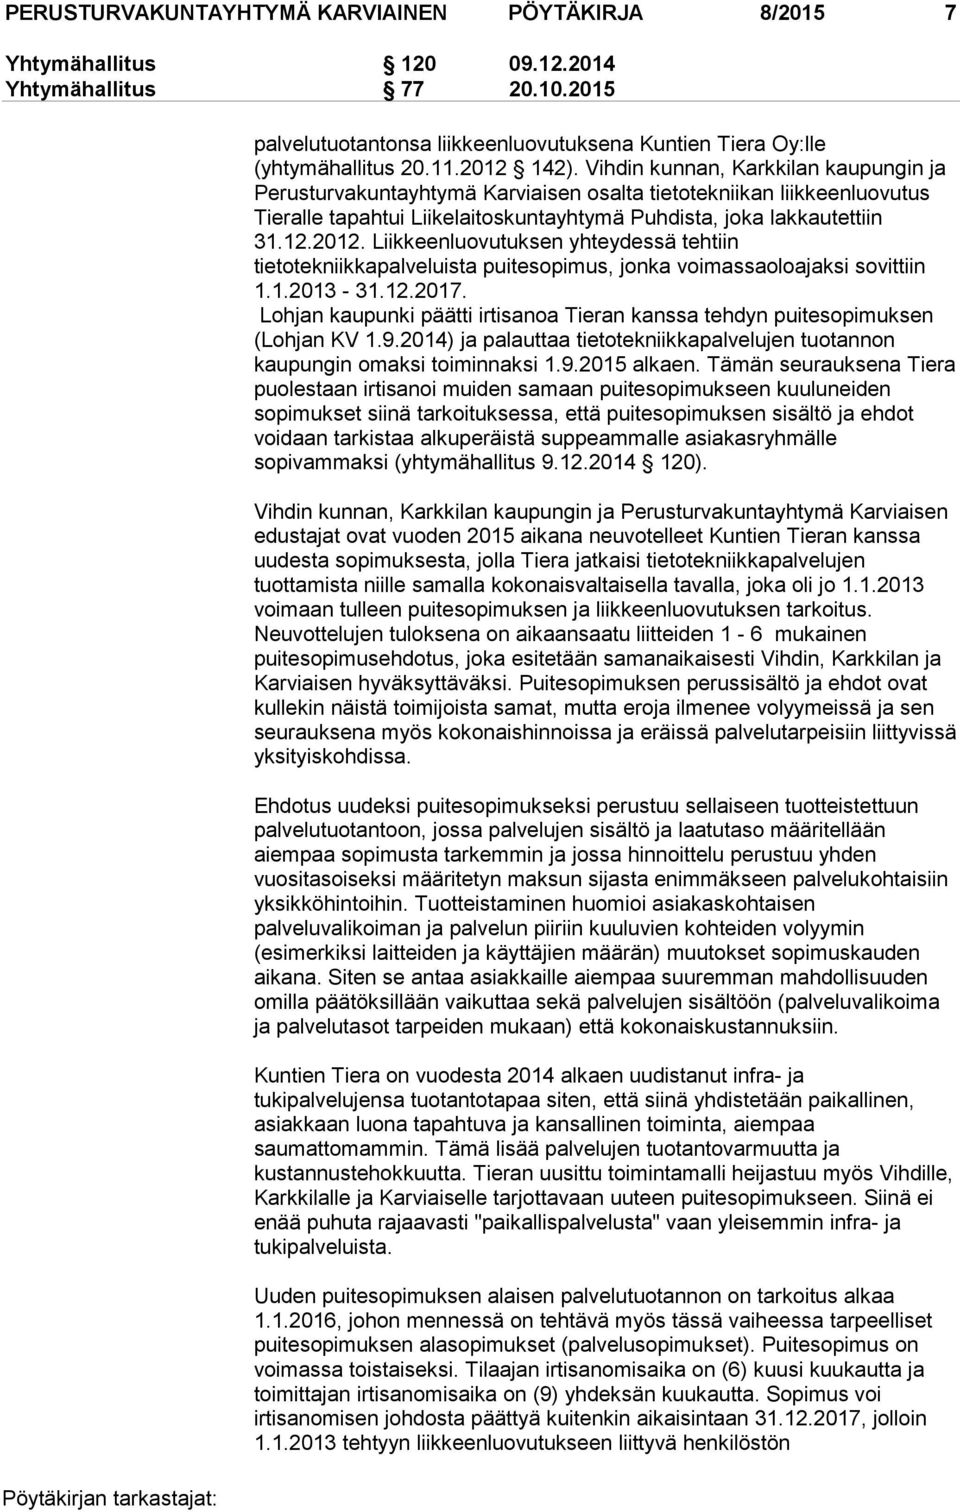 1.2013-31.12.2017. Lohjan kaupunki päätti irtisanoa Tieran kanssa tehdyn puitesopimuksen (Lohjan KV 1.9.2014) ja palauttaa tietotekniikkapalvelujen tuotannon kaupungin omaksi toiminnaksi 1.9.2015 alkaen.